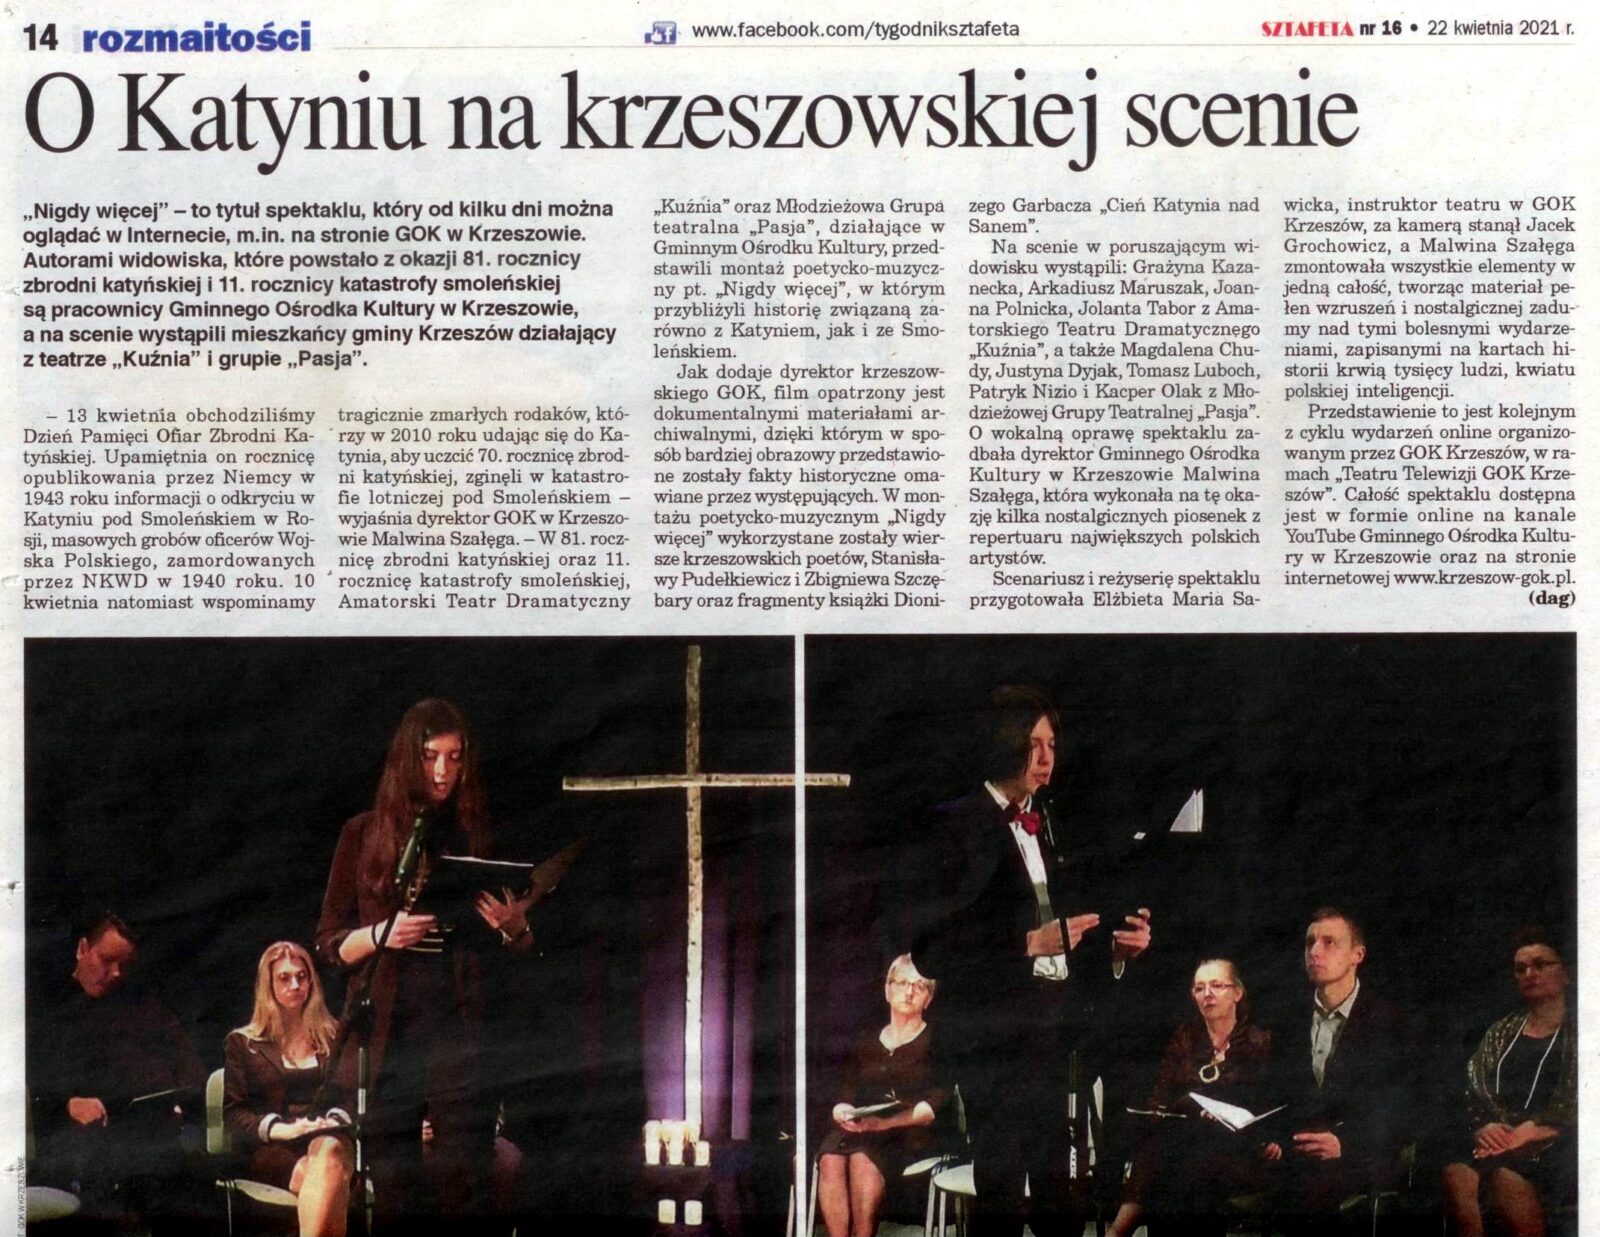 "Teatr Telewizji GOK Krzeszów" w lokalnej prasie